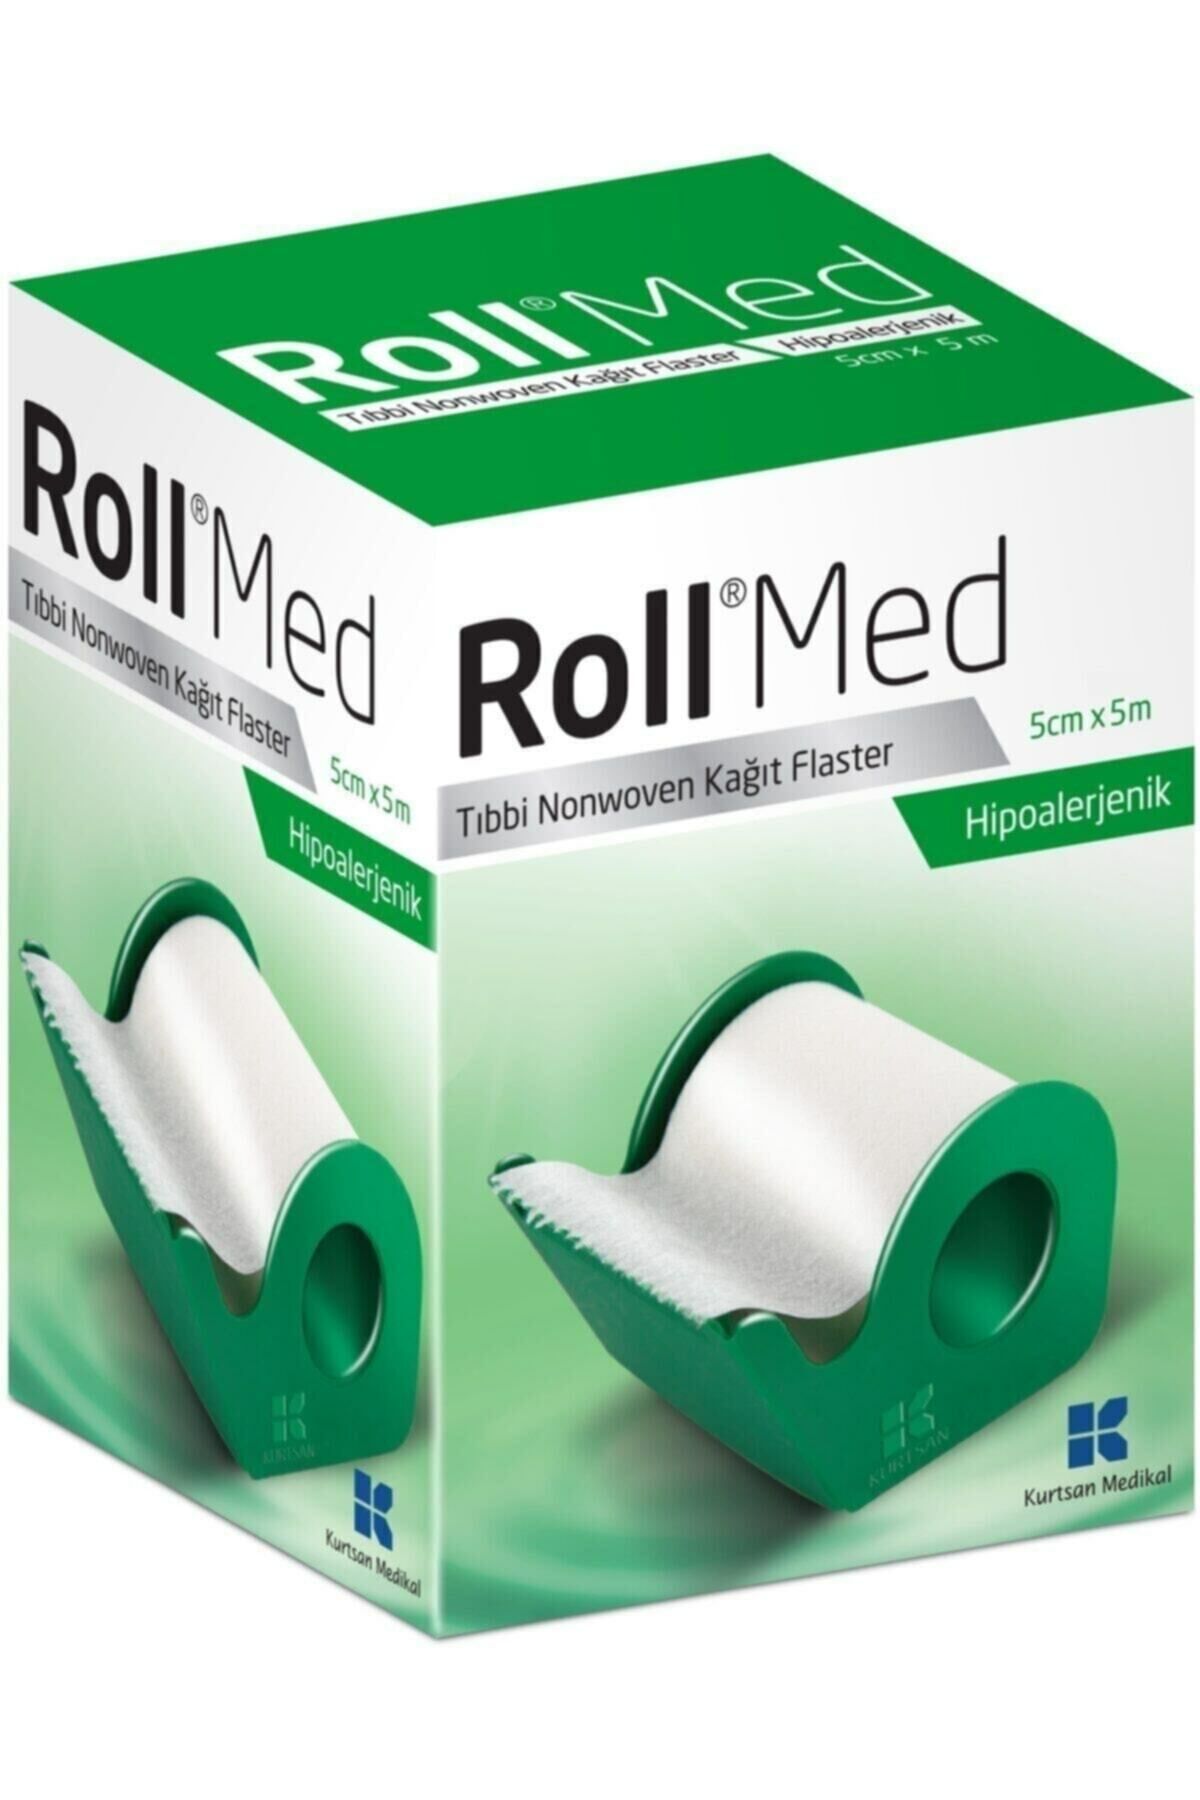 Roll Med Tıbbi Nonwoven Kağıt Flaster 5 Cm x 5 M